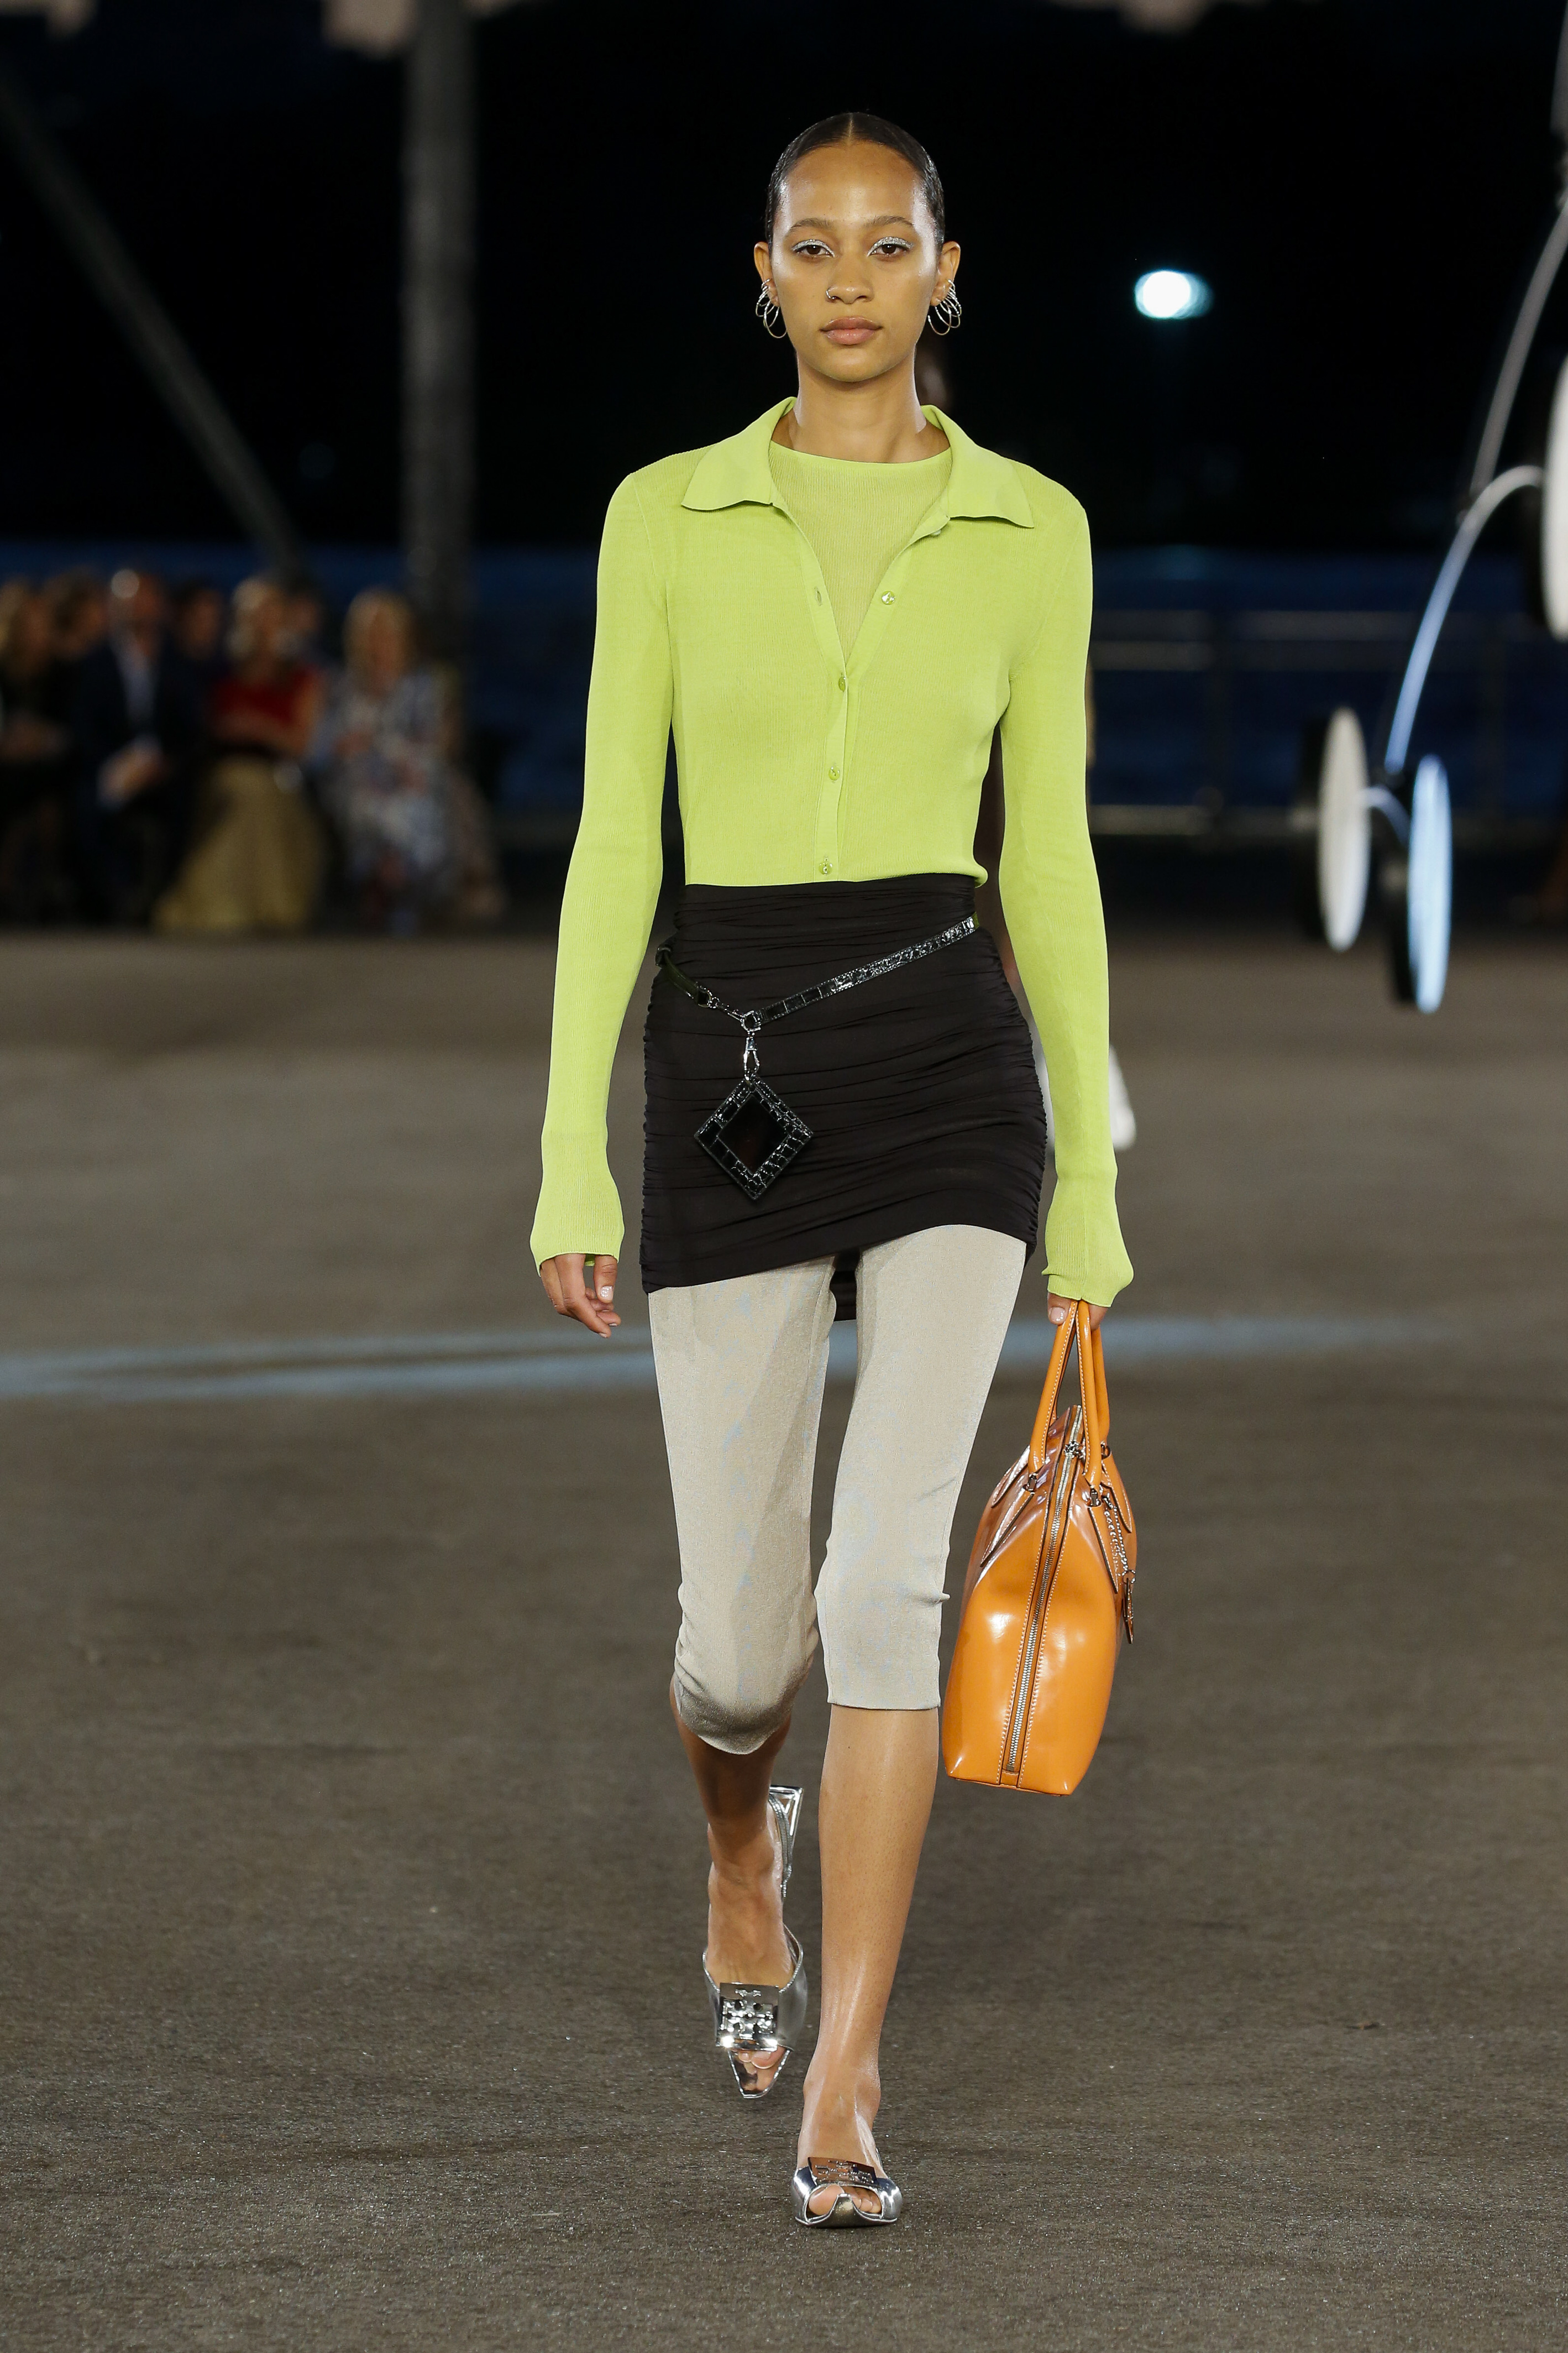 Desfile de primavera-verão 2023 da Tory Burch na semana de moda de Nova York. Modelo usando blusa de manga comprida com decote polo em verde neon, saia preta por cima de legging cropped off white e segurando bolsa laranja